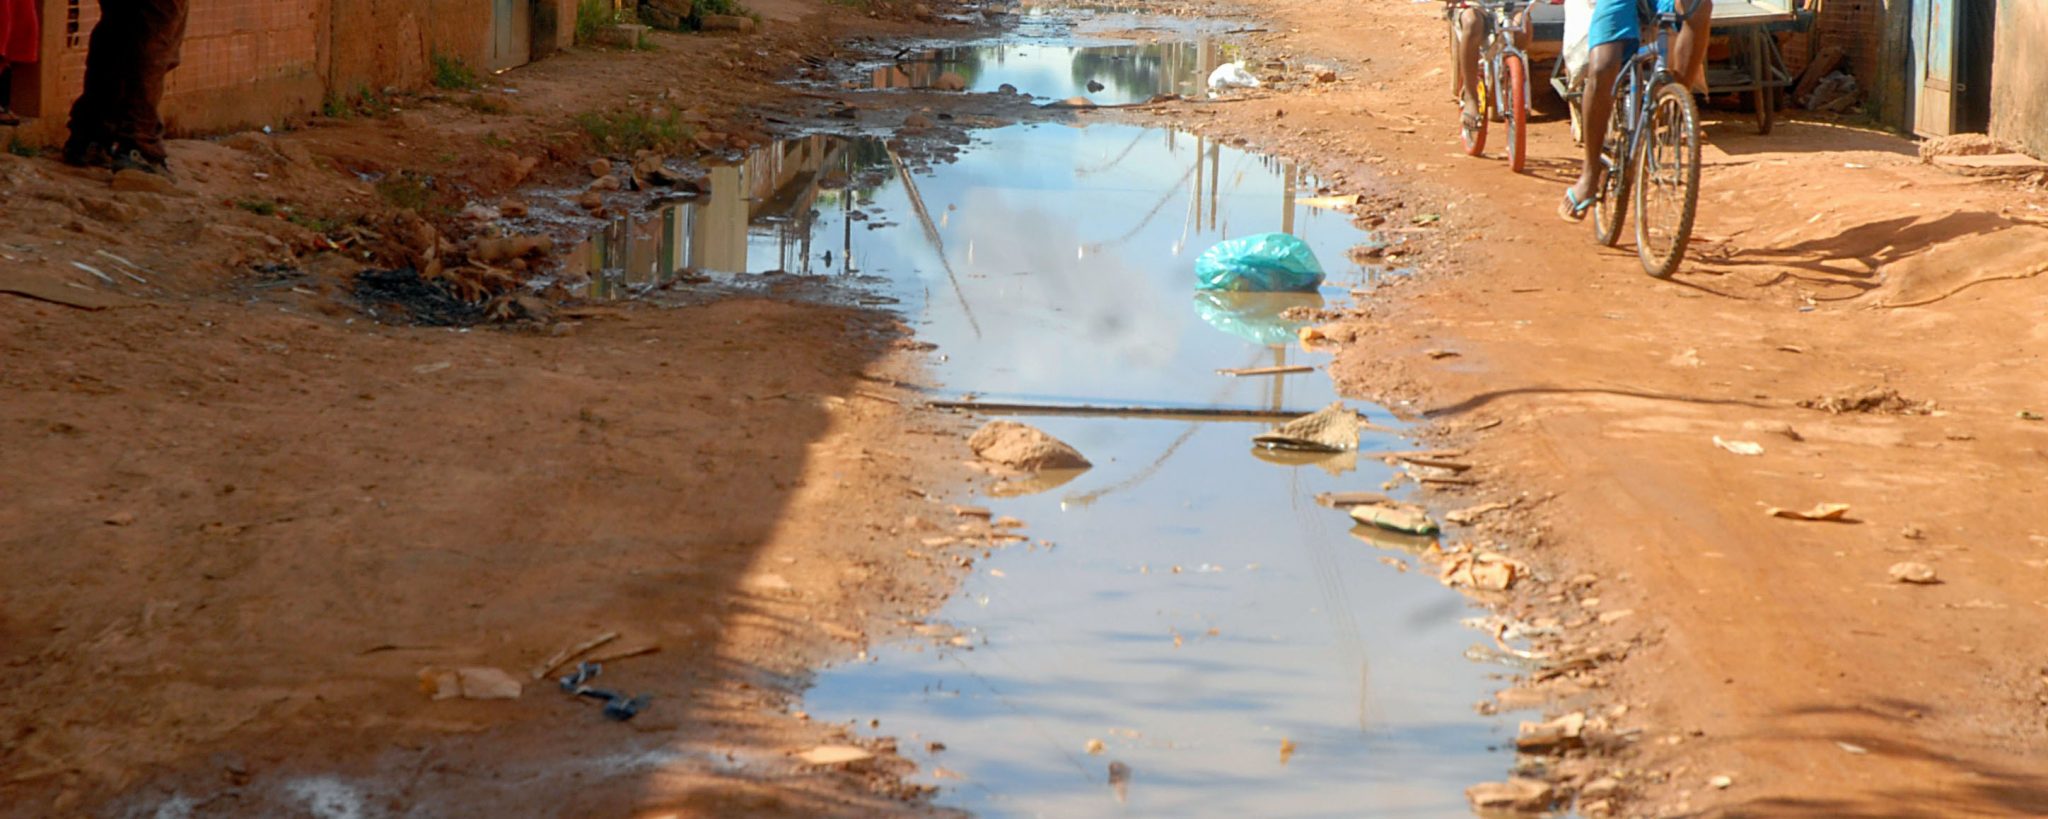 Os desafios e o futuro do saneamento básico no Brasil